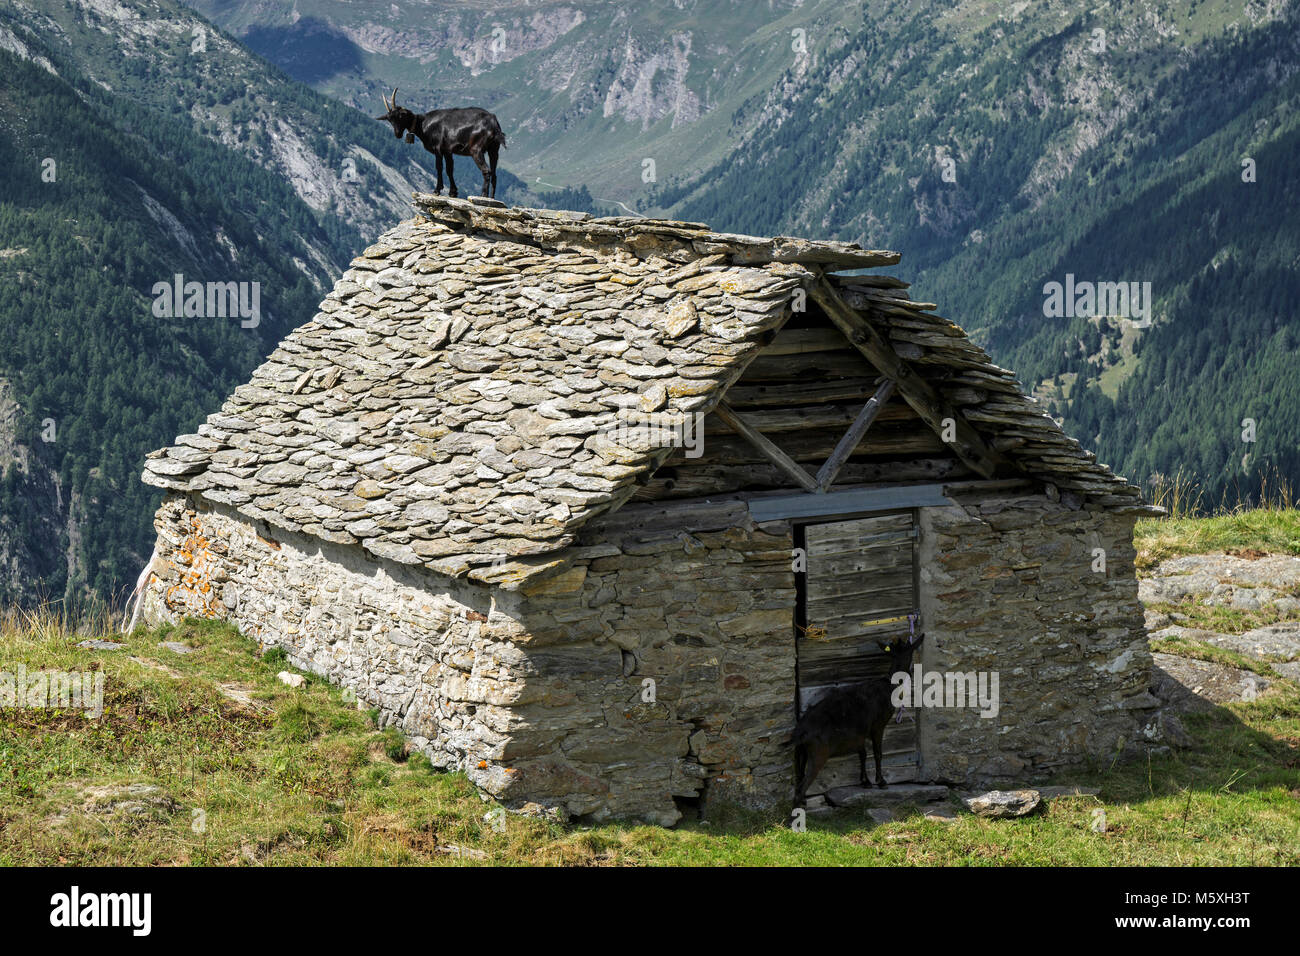 Chèvre (Capra) sur le toit d'une vieille cabane de pierres près de l'Alpe Corte del Sasso, Lavizzara, Canton du Tessin, Suisse Banque D'Images